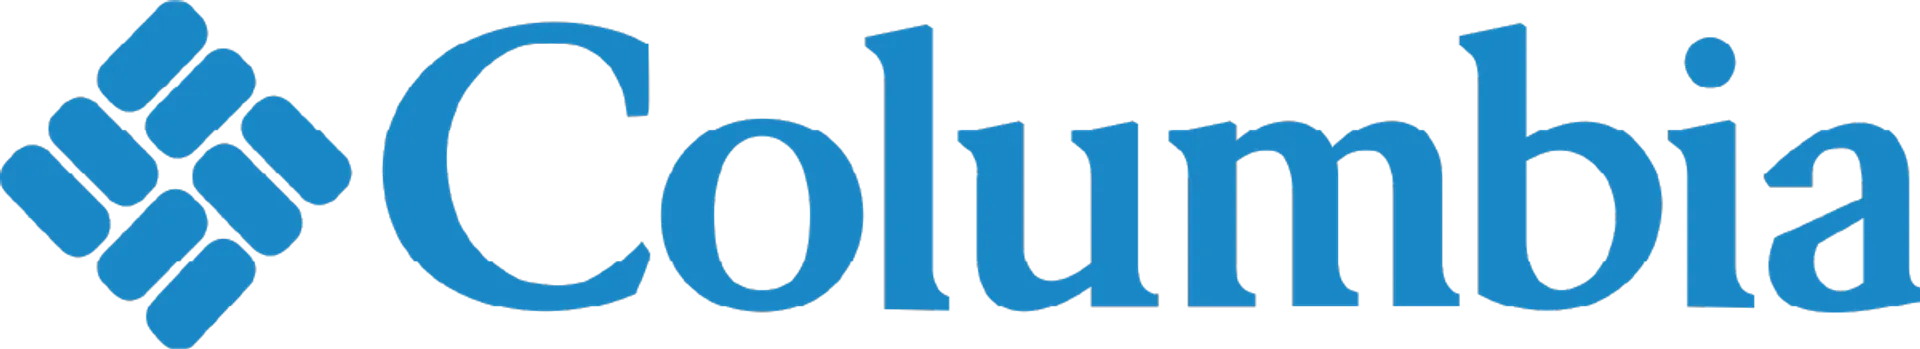 COLUMBIA logo de circulaires